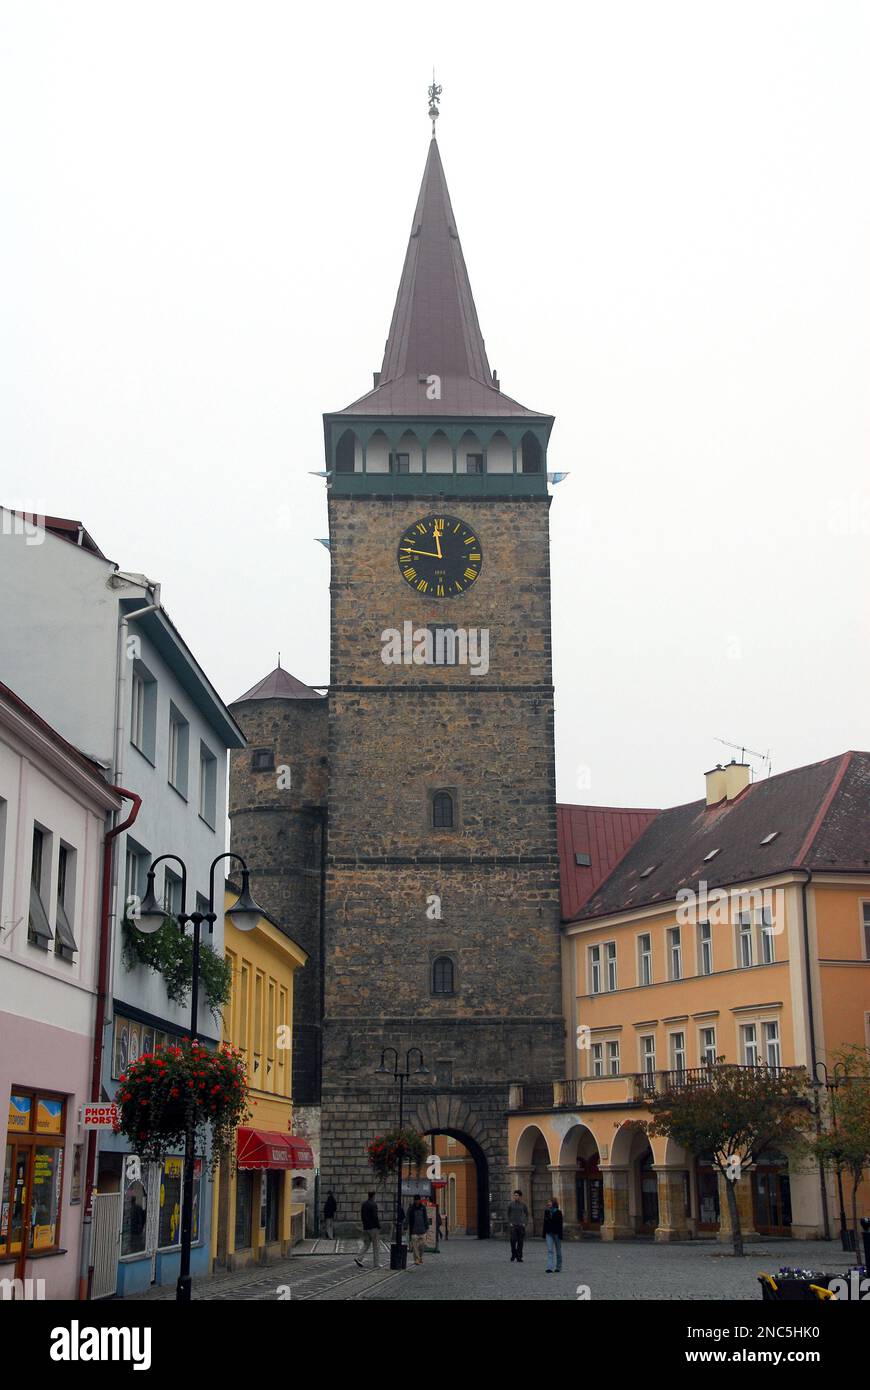 Valdice Gate, Valdická brána, Valdštejnovo Square, Jičín town, Hradec Králové Region, Czech Republic, Europe Stock Photo